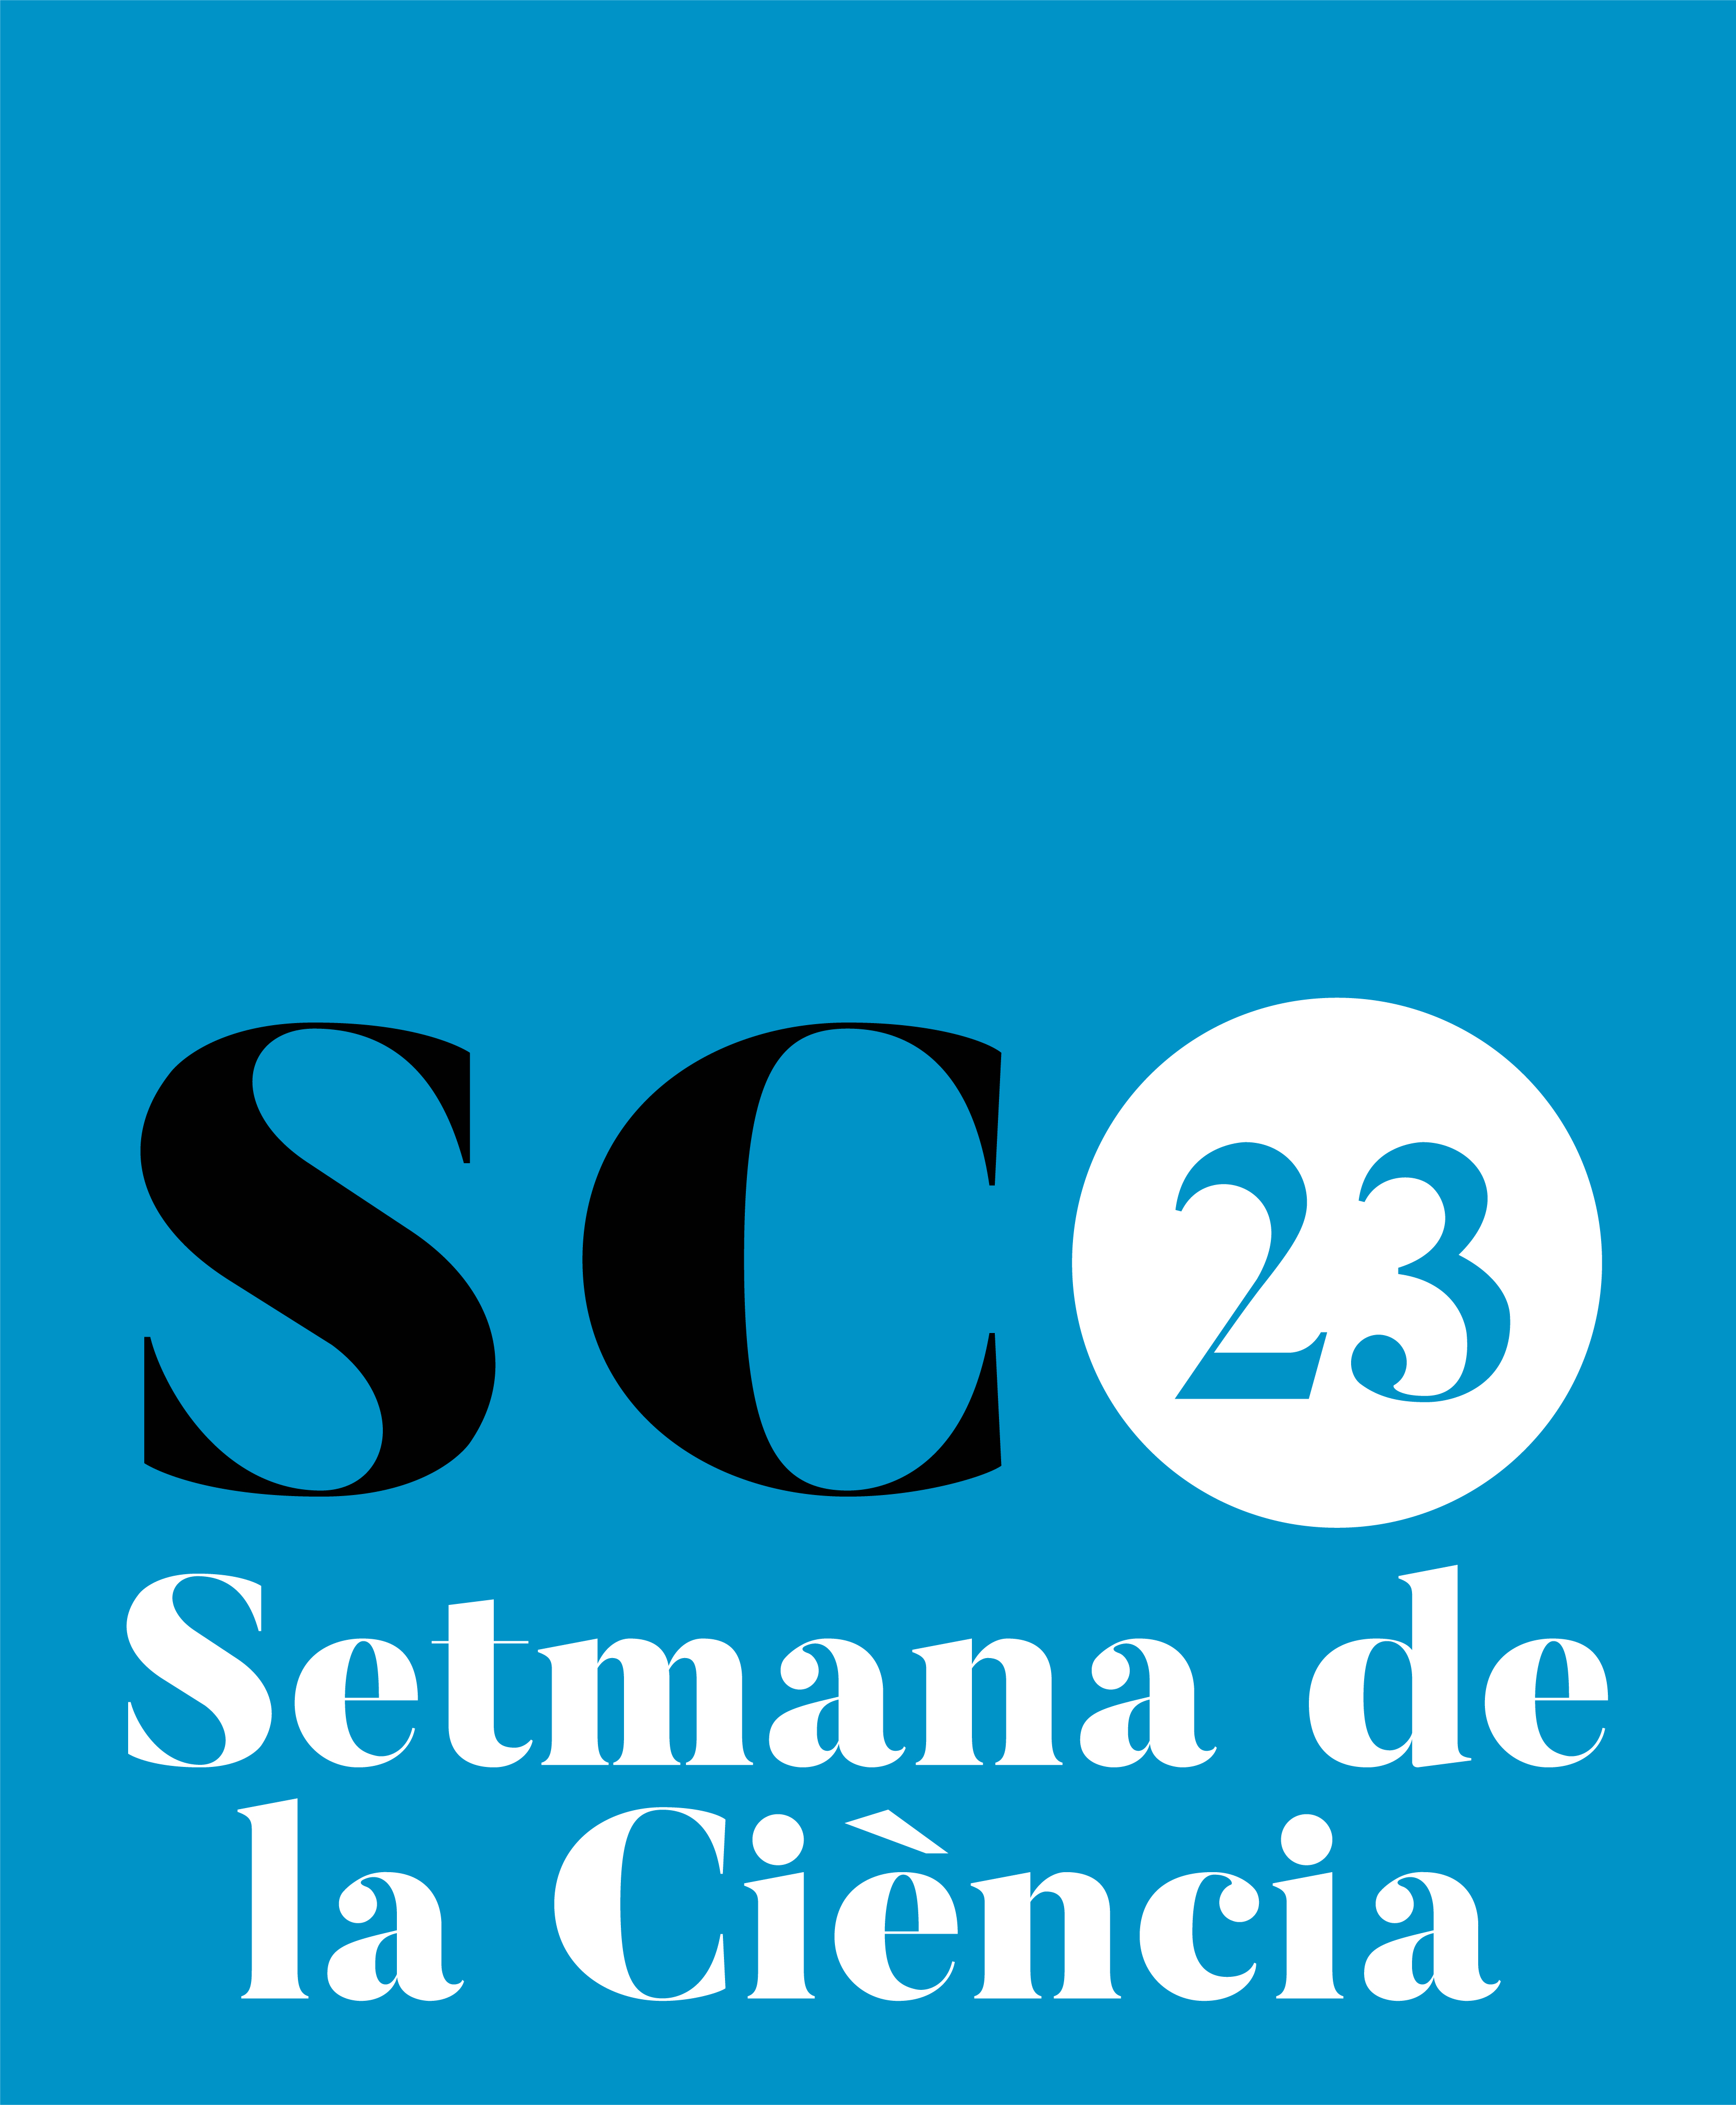 Logotip complet, imatge de mostra